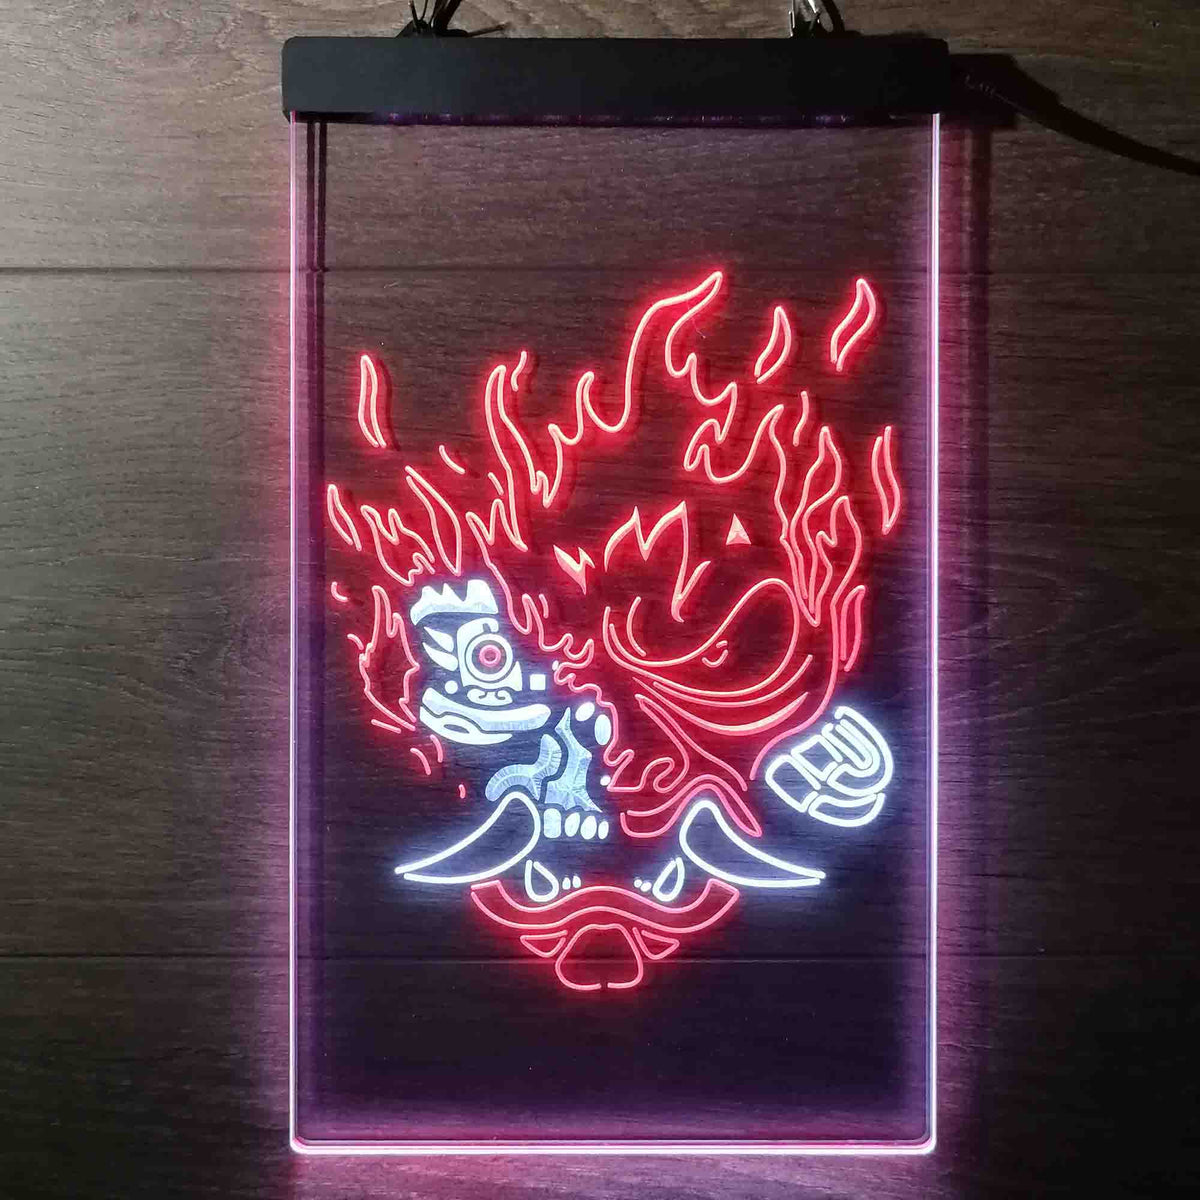 Cyberpunk 2077 Night City Samurai Neon Sign - LED LAB CAVE